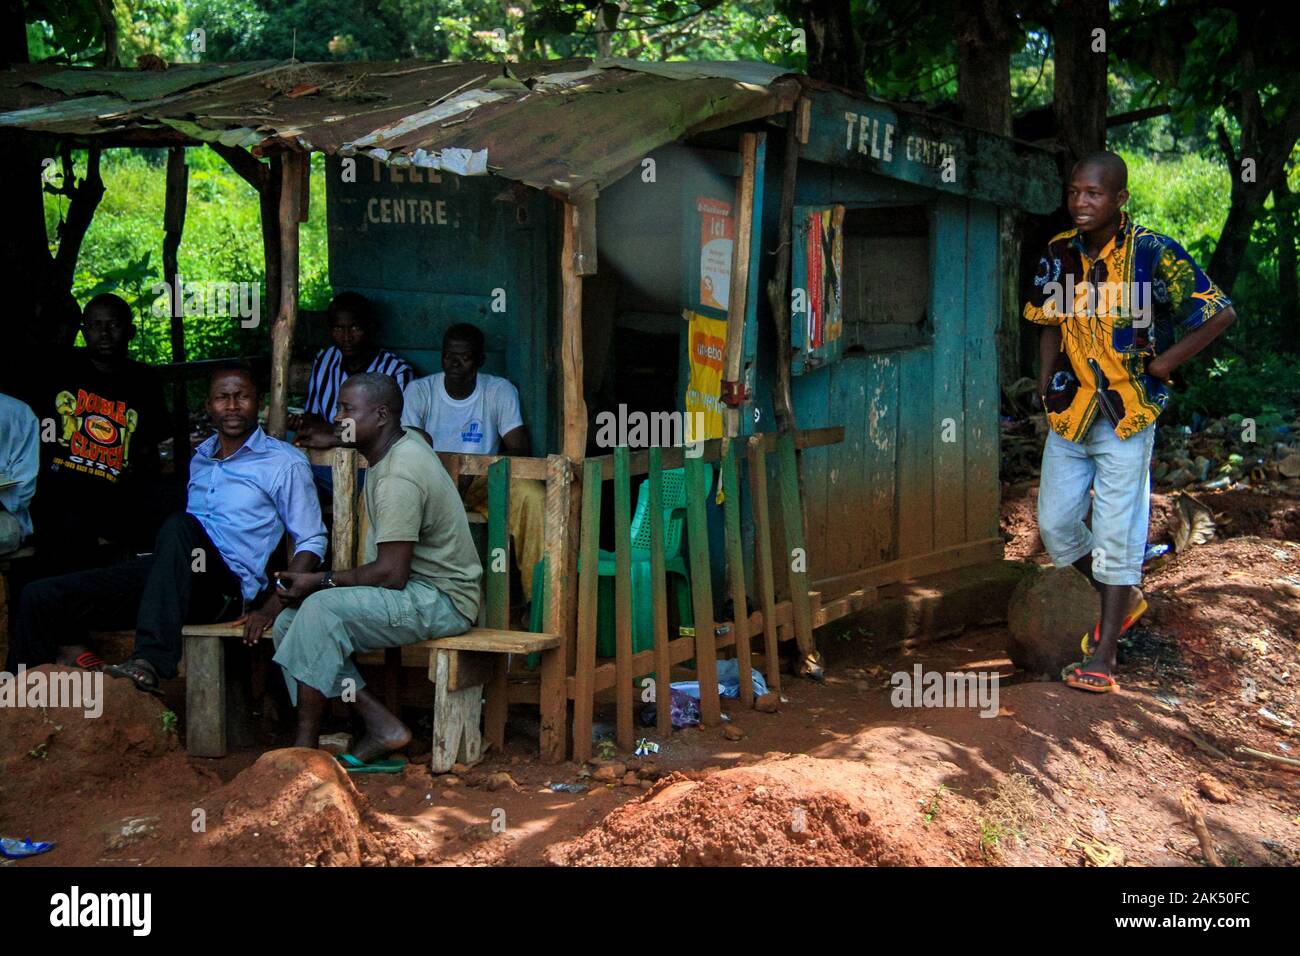 Eine Gruppe von Männern versammelt sich in einem TV-Zentrum, um Sport wie Fußball zu erleben - Conakry, Guinea, Westafrika Stockfoto